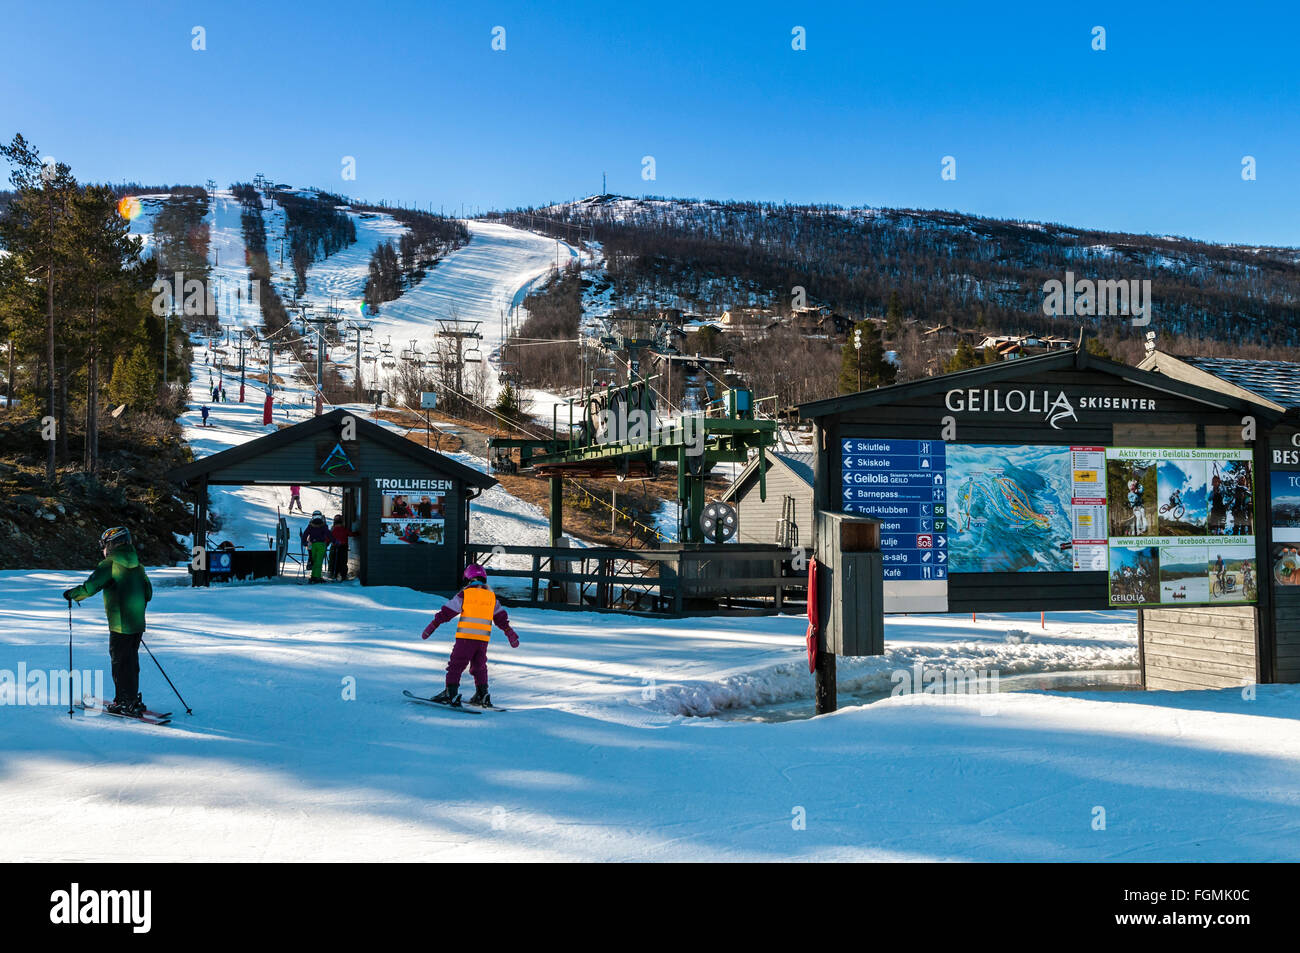 Piste da sci, sciatore, skicenter Geilolia, Geilo, inverno, Buskerud, Norvegia Foto Stock